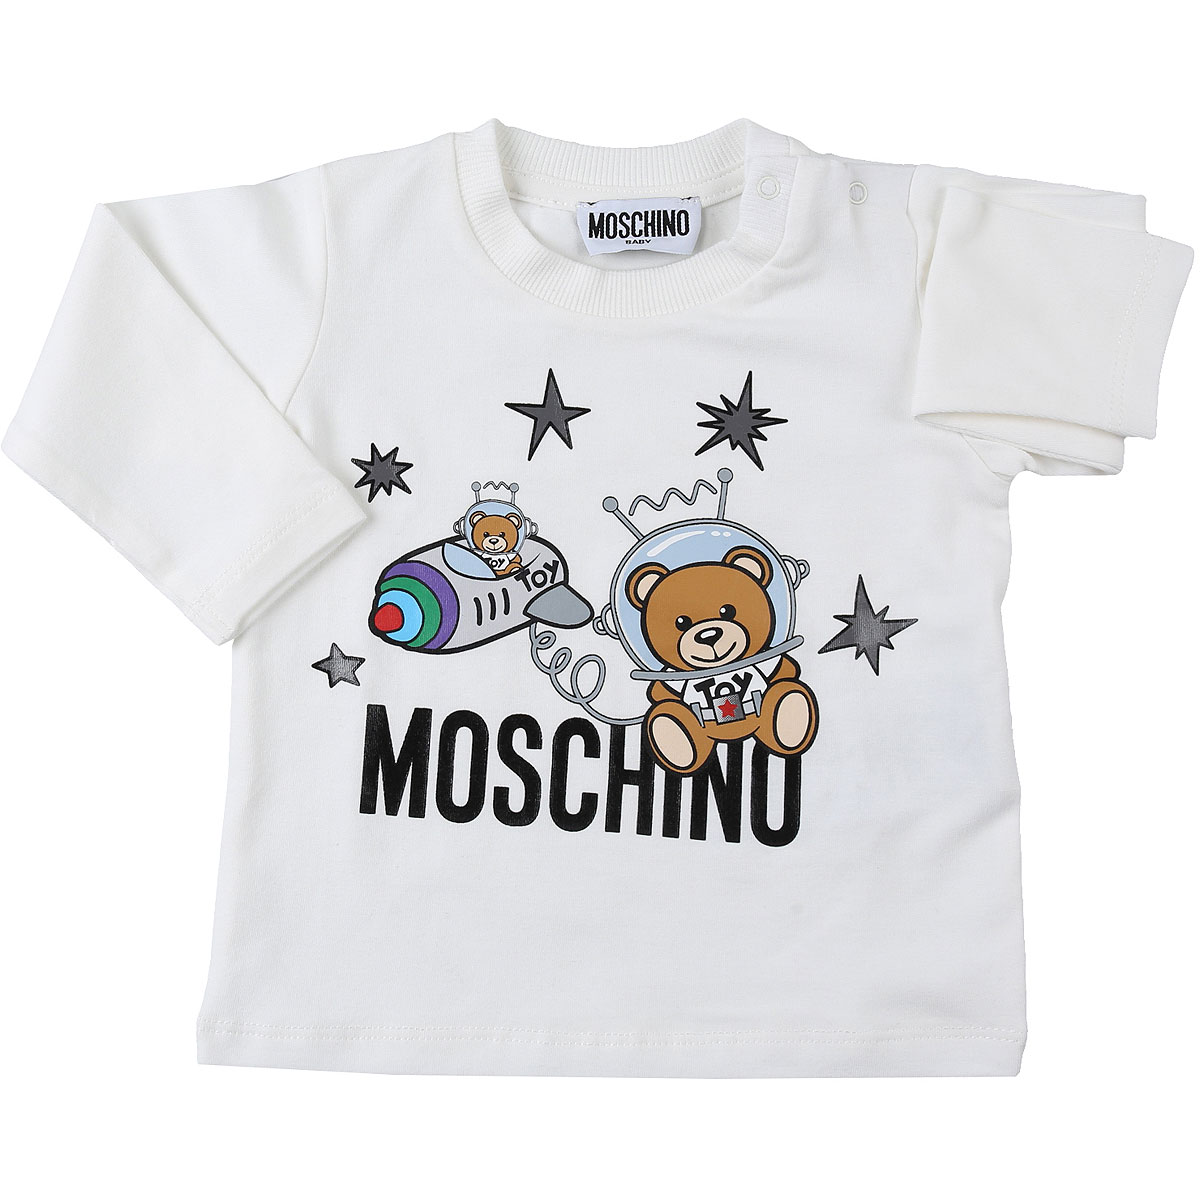 Moschino Baby T-Shirt für Jungen Günstig im Sale, Weiss, Baumwolle, 2017, 12 M 18M 24M 2Y 3Y 6M 9M